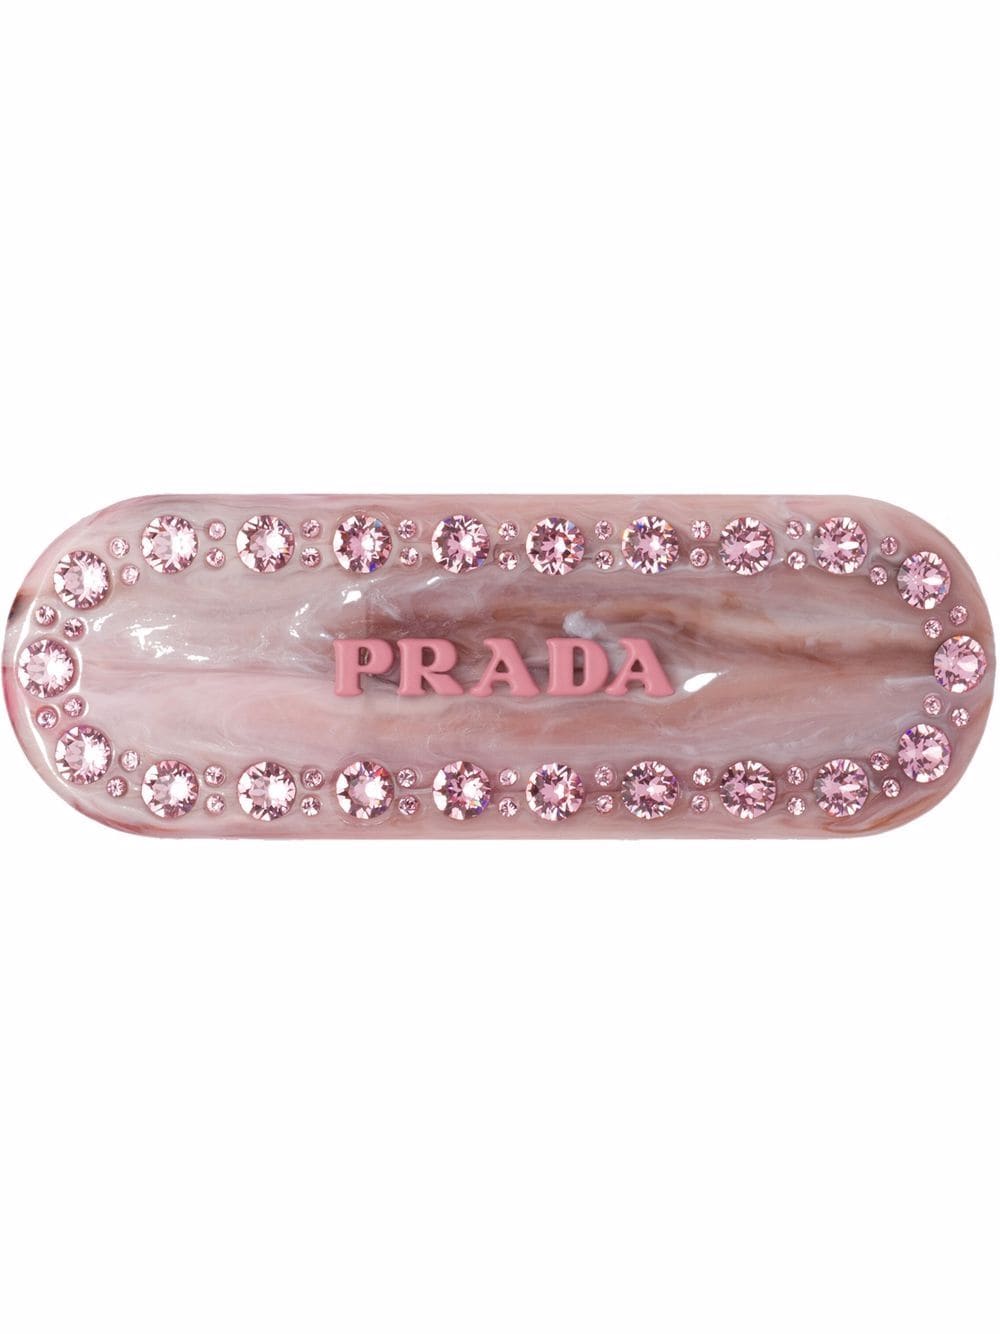 Prada Haarspange mit Logo - Rosa von Prada